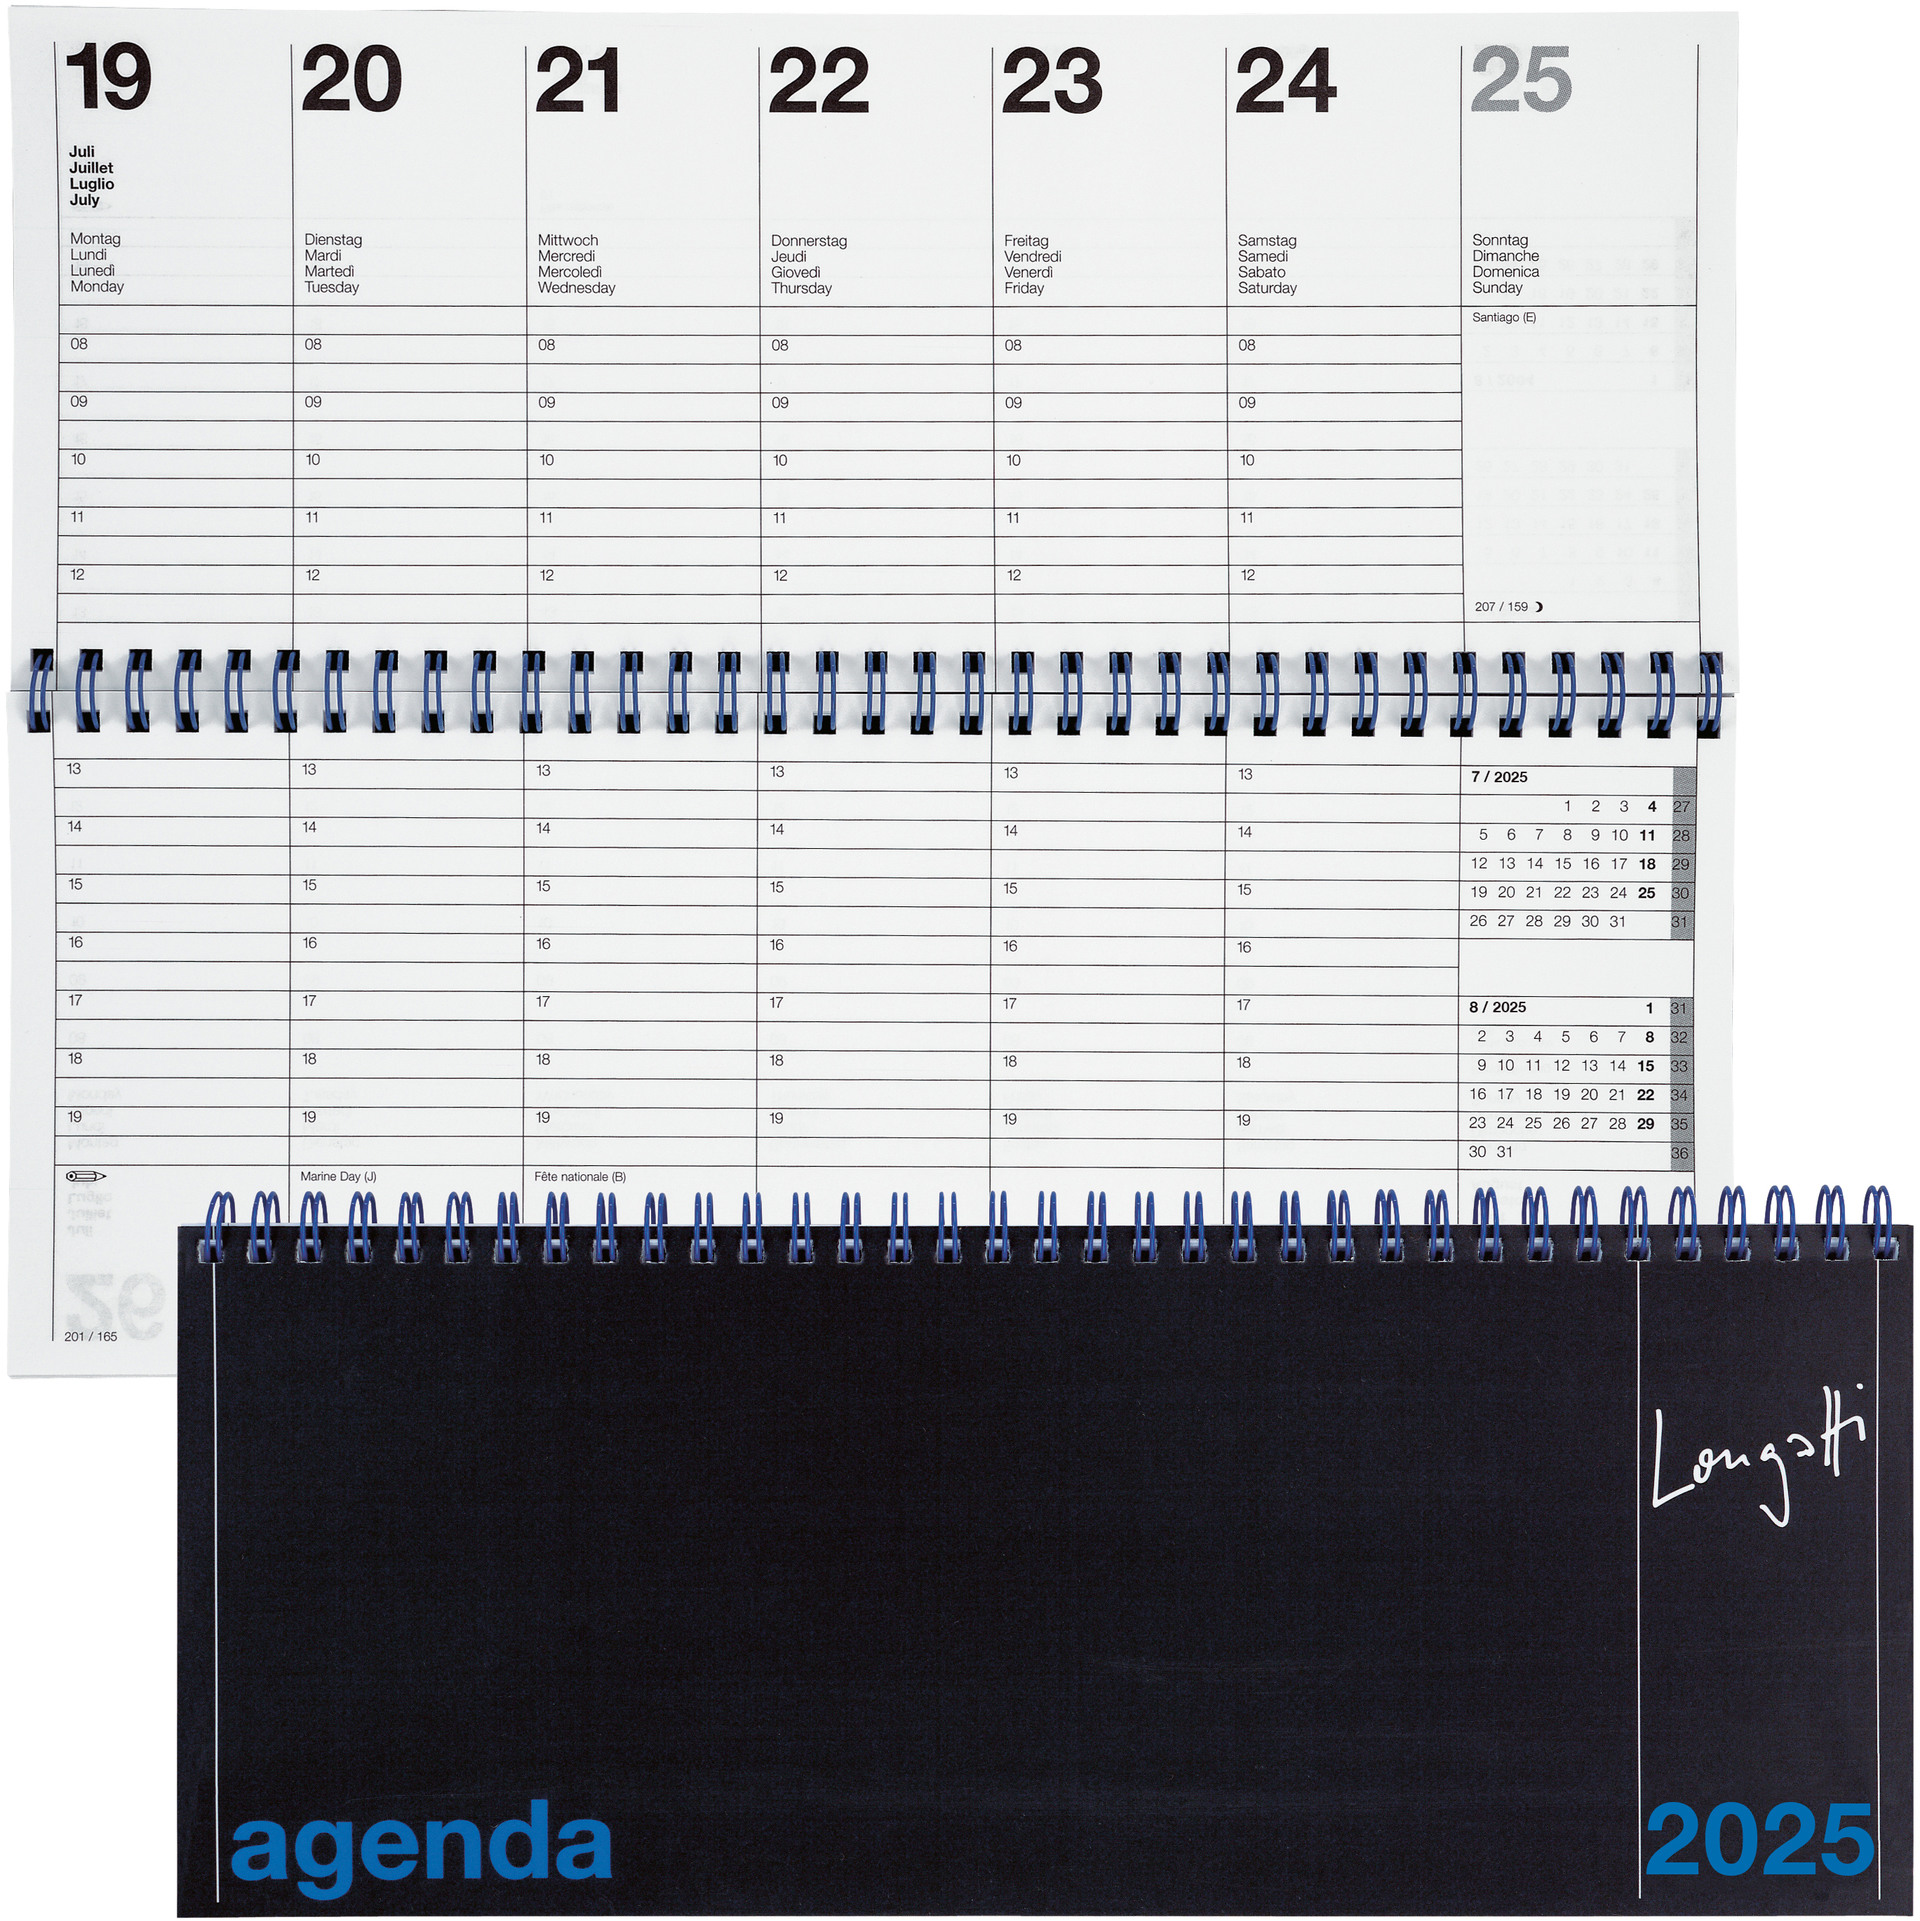 BIELLA Agenda Longatti 2025 886271020025 1S/2P W-O noir ML 29.8x11.7cm